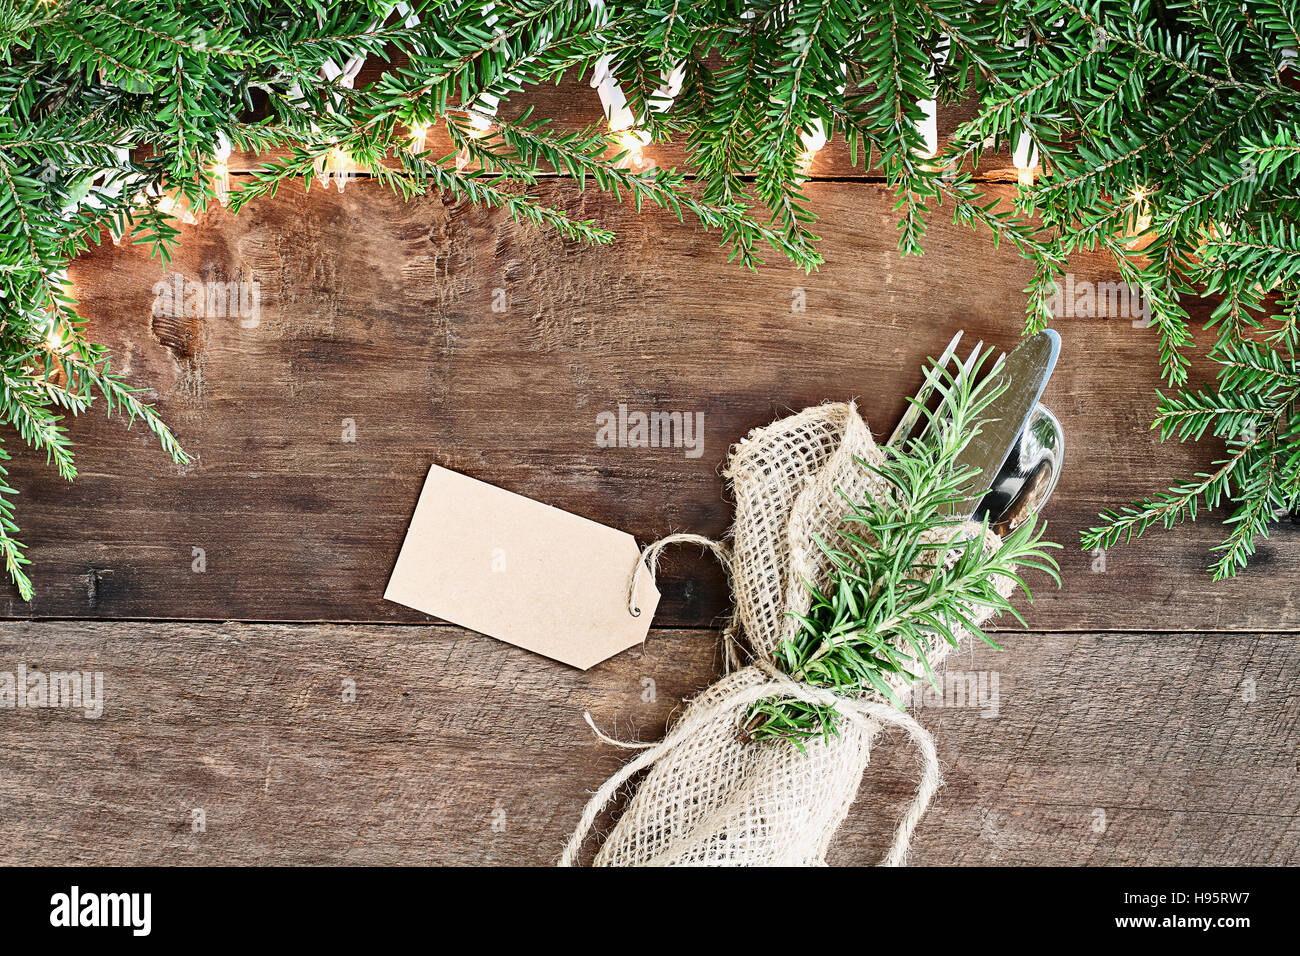 Arbre de Noël des branches de pins, de l'argenterie enveloppée dans une serviette de toile avec carte vierge et des lumières décoratives sur un fond rustique en bois de grange. Banque D'Images